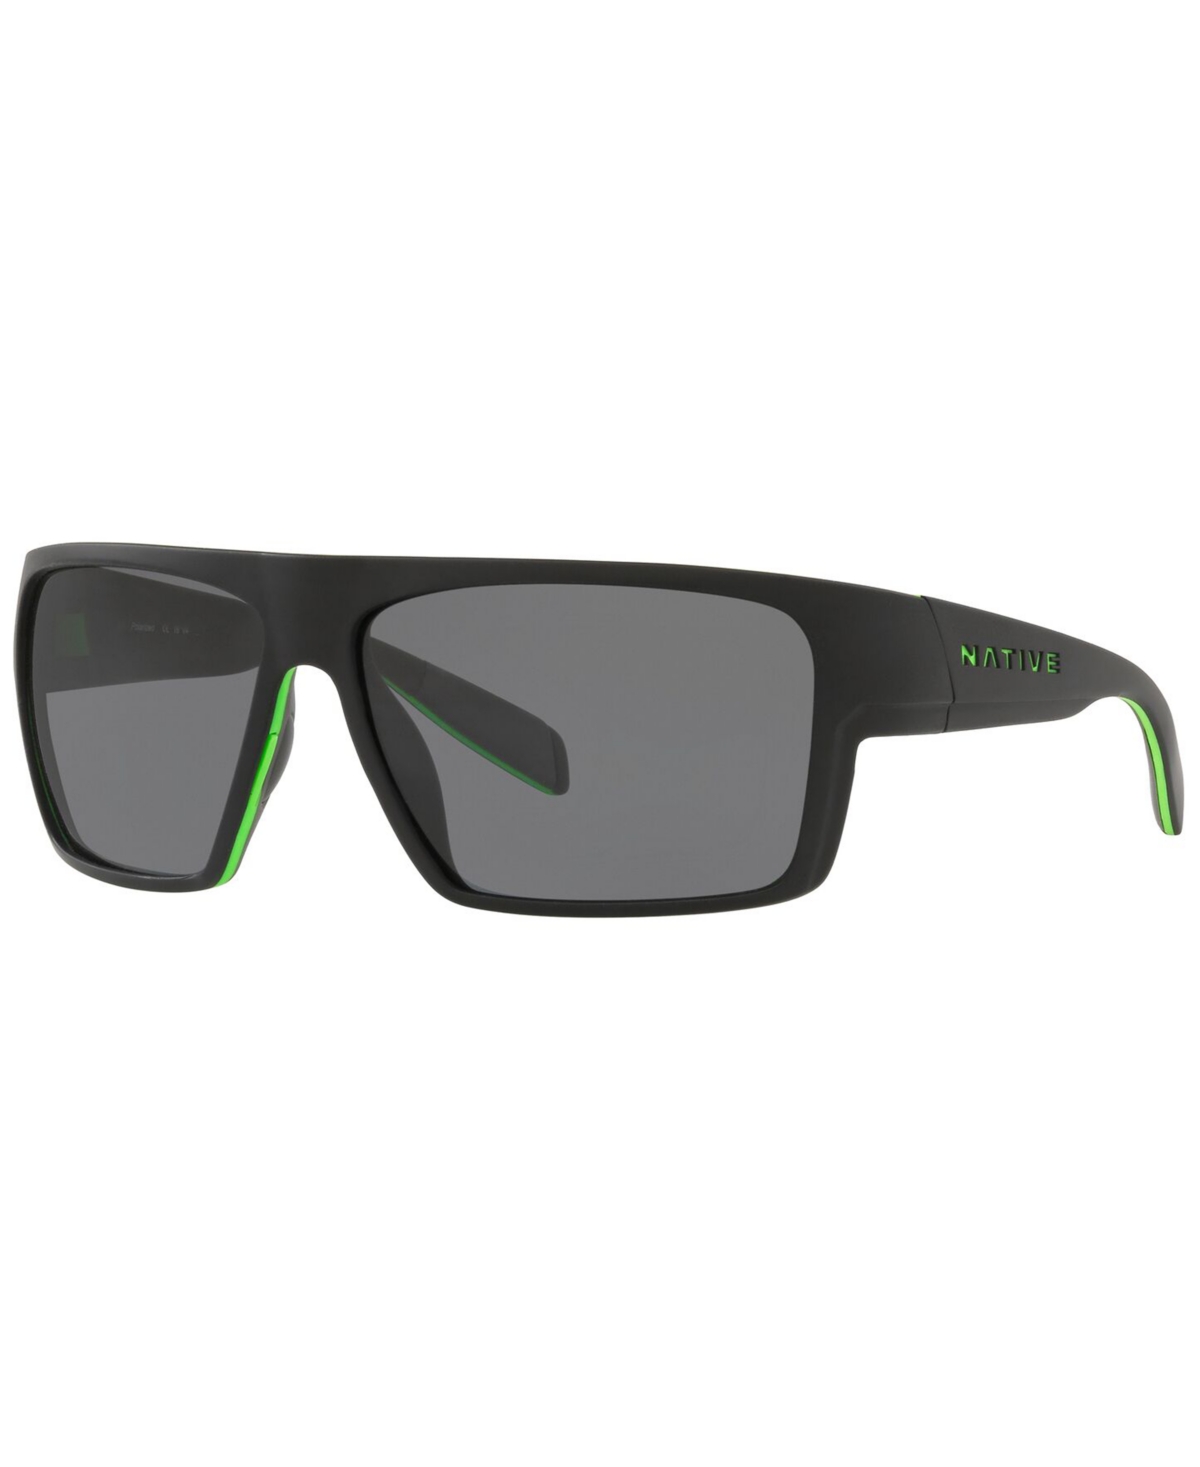 Native Men's Polarized Sunglasses, XD9010 62 - BLACK/LIME GREEN/BLACK/GREY